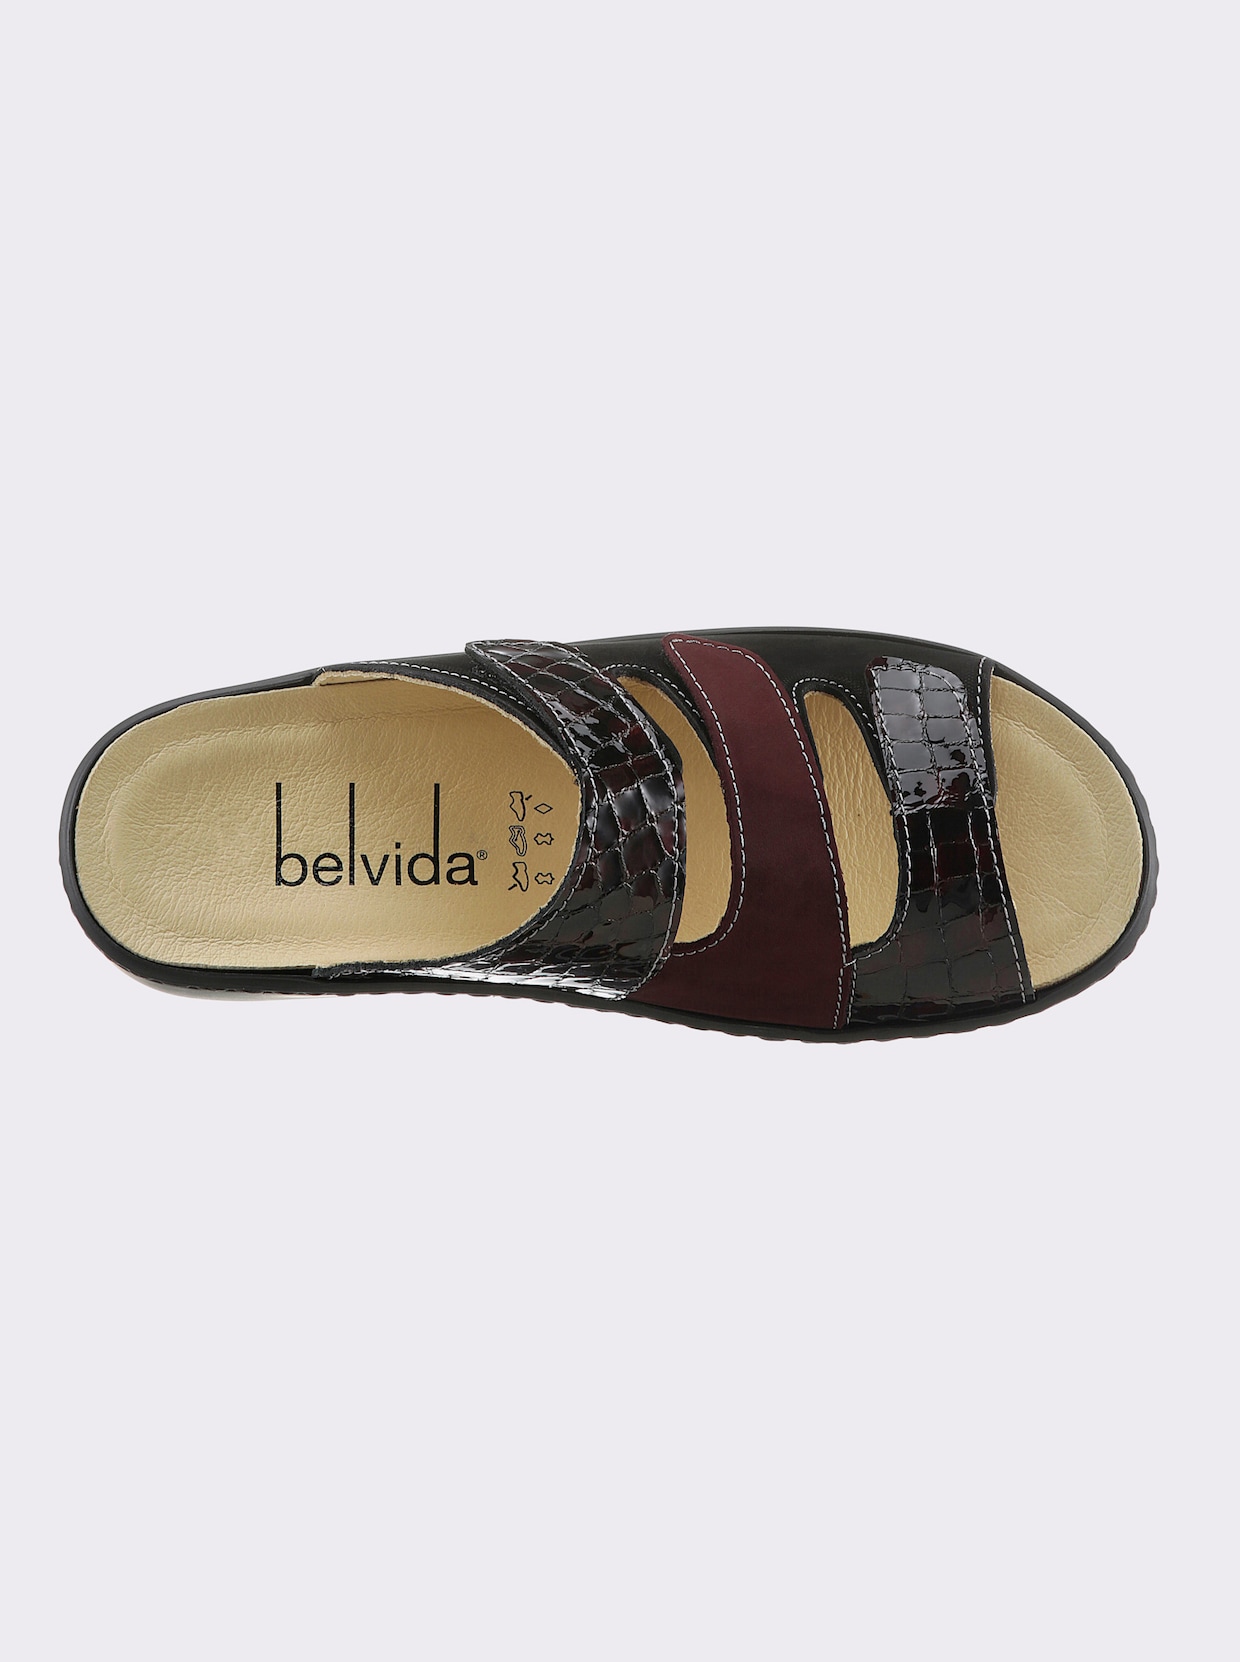 Belvida Pantolette - schwarz-bordeaux